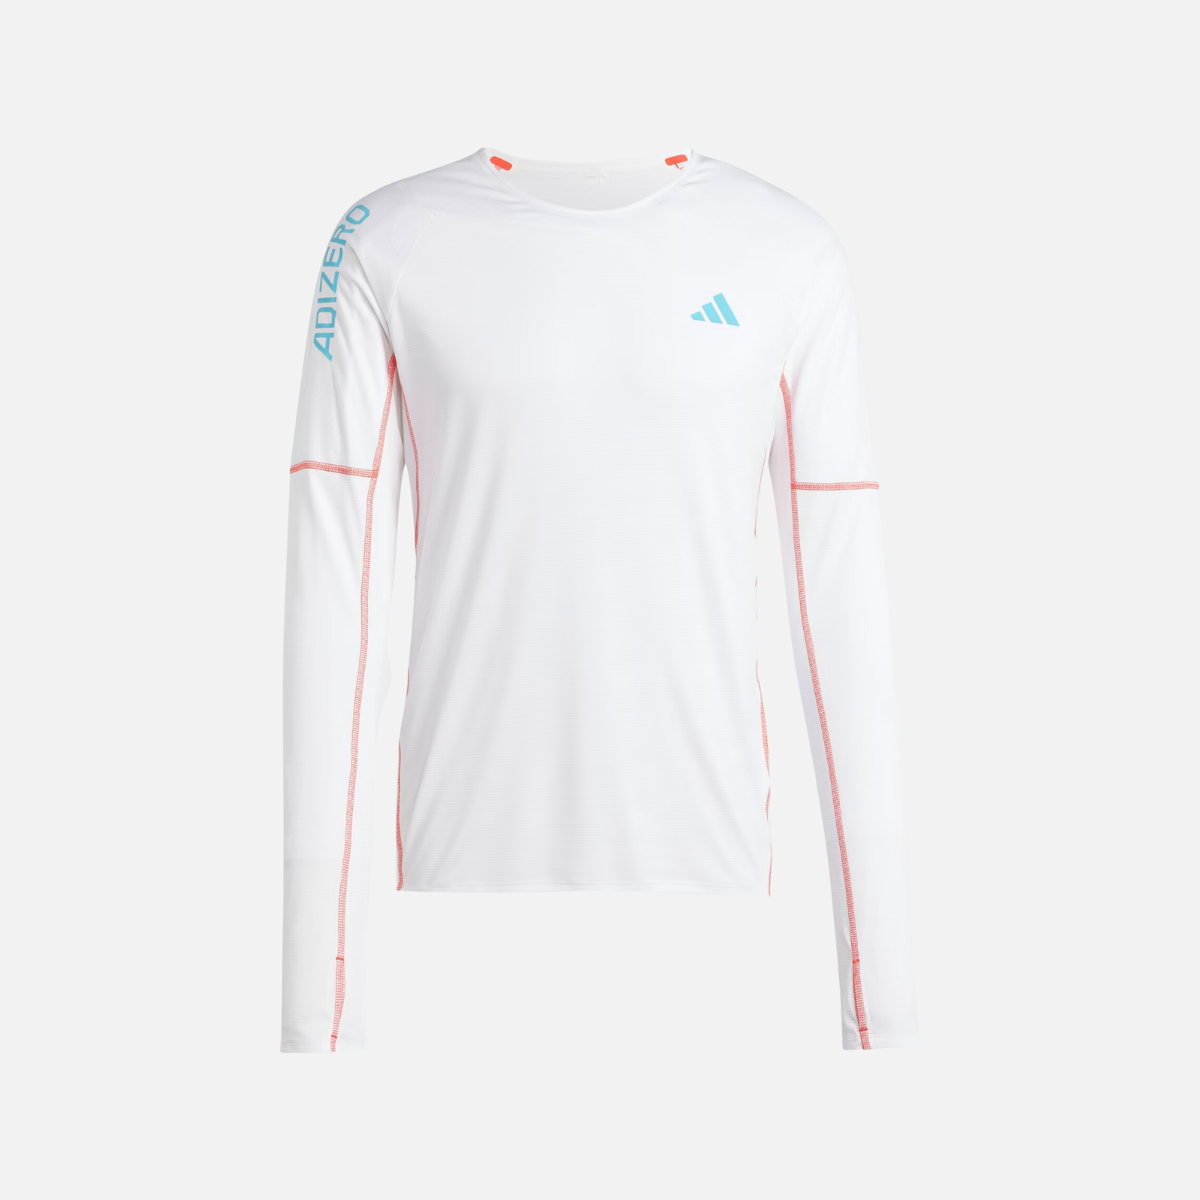 Adidas Adizero Men's Running Long Sleeve T-shirt -White